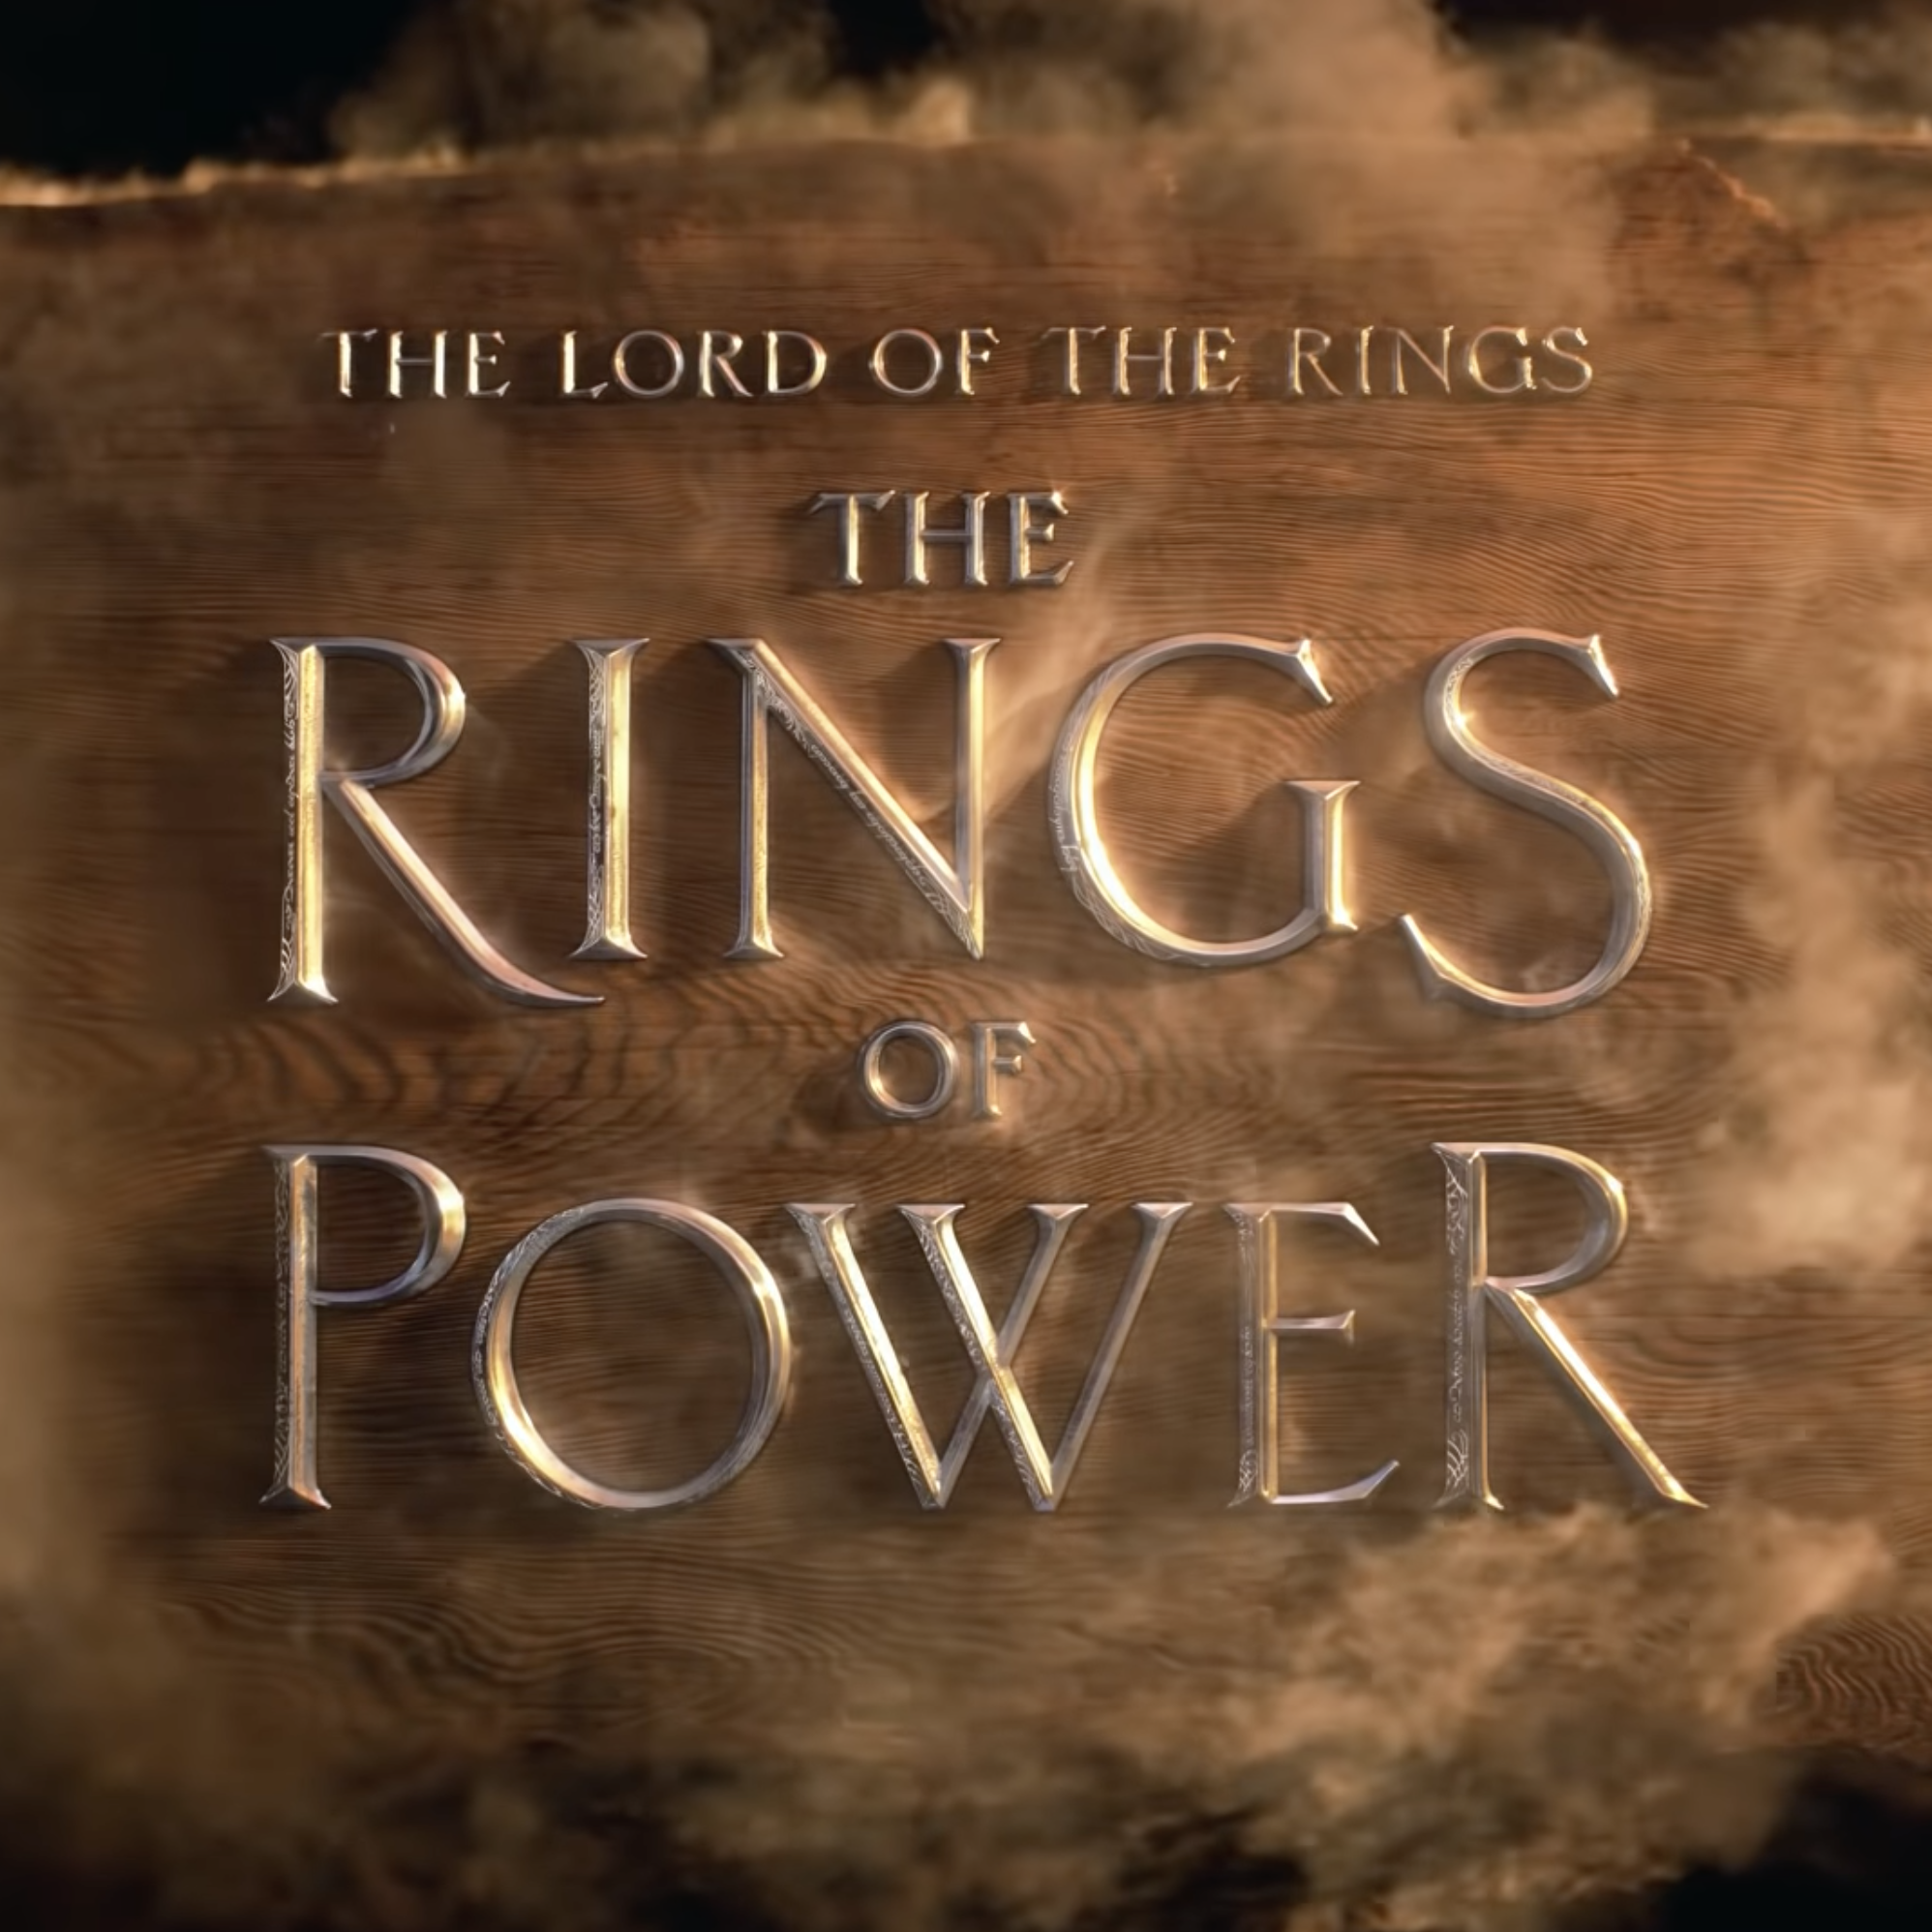 معروف ترین پوستر The Rings of Power با تم طلایی خاص